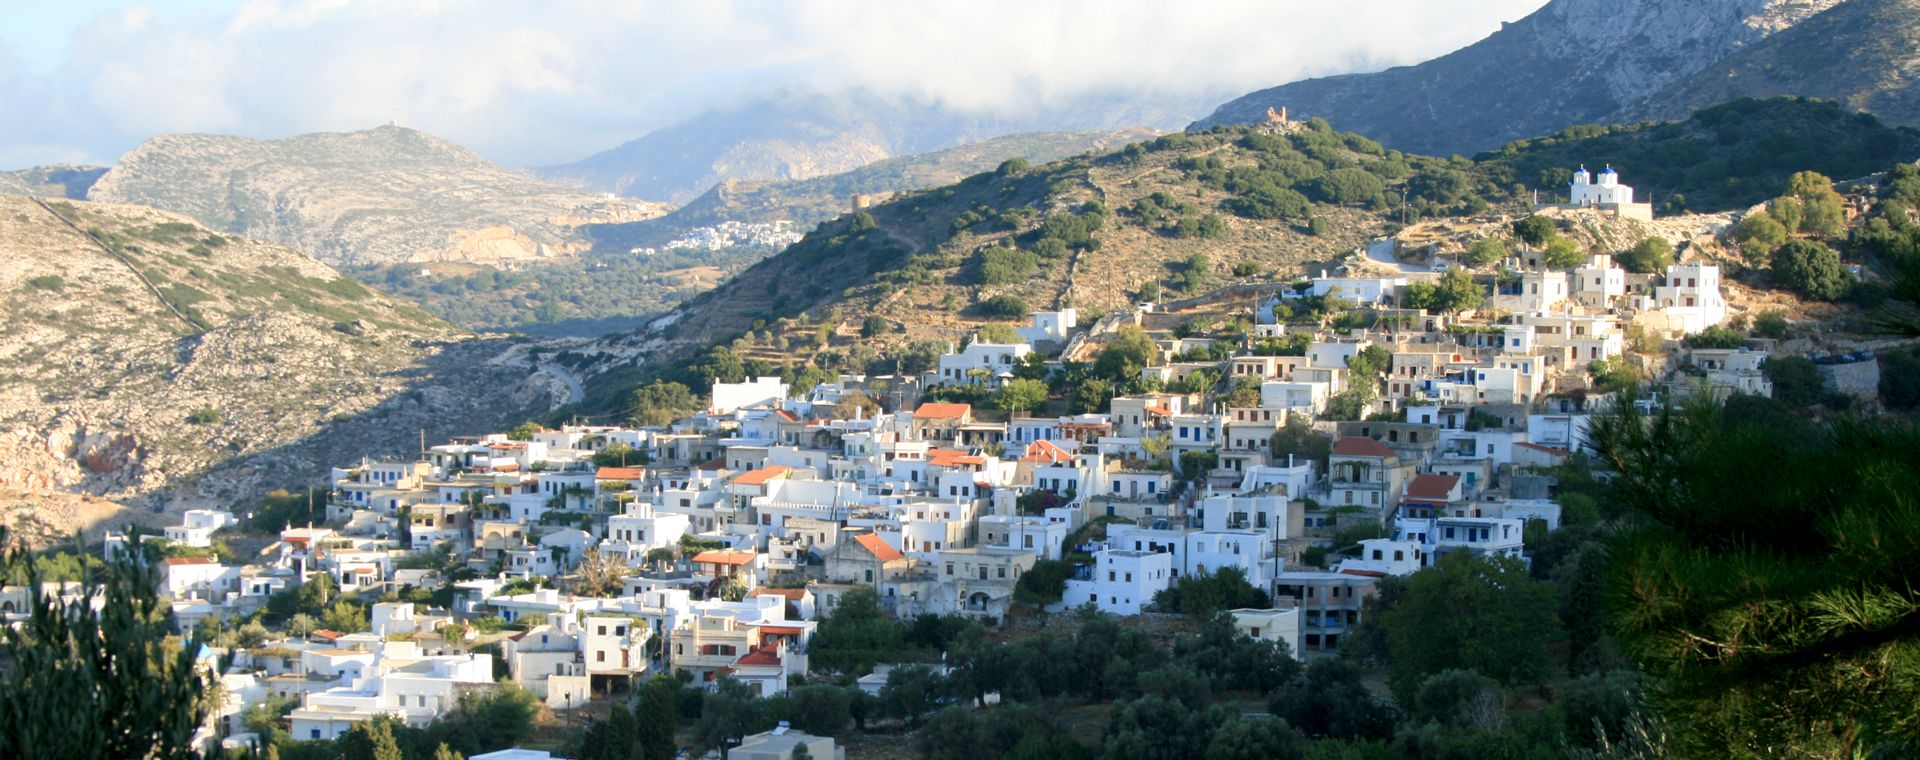 Naxos: the village of Filoti